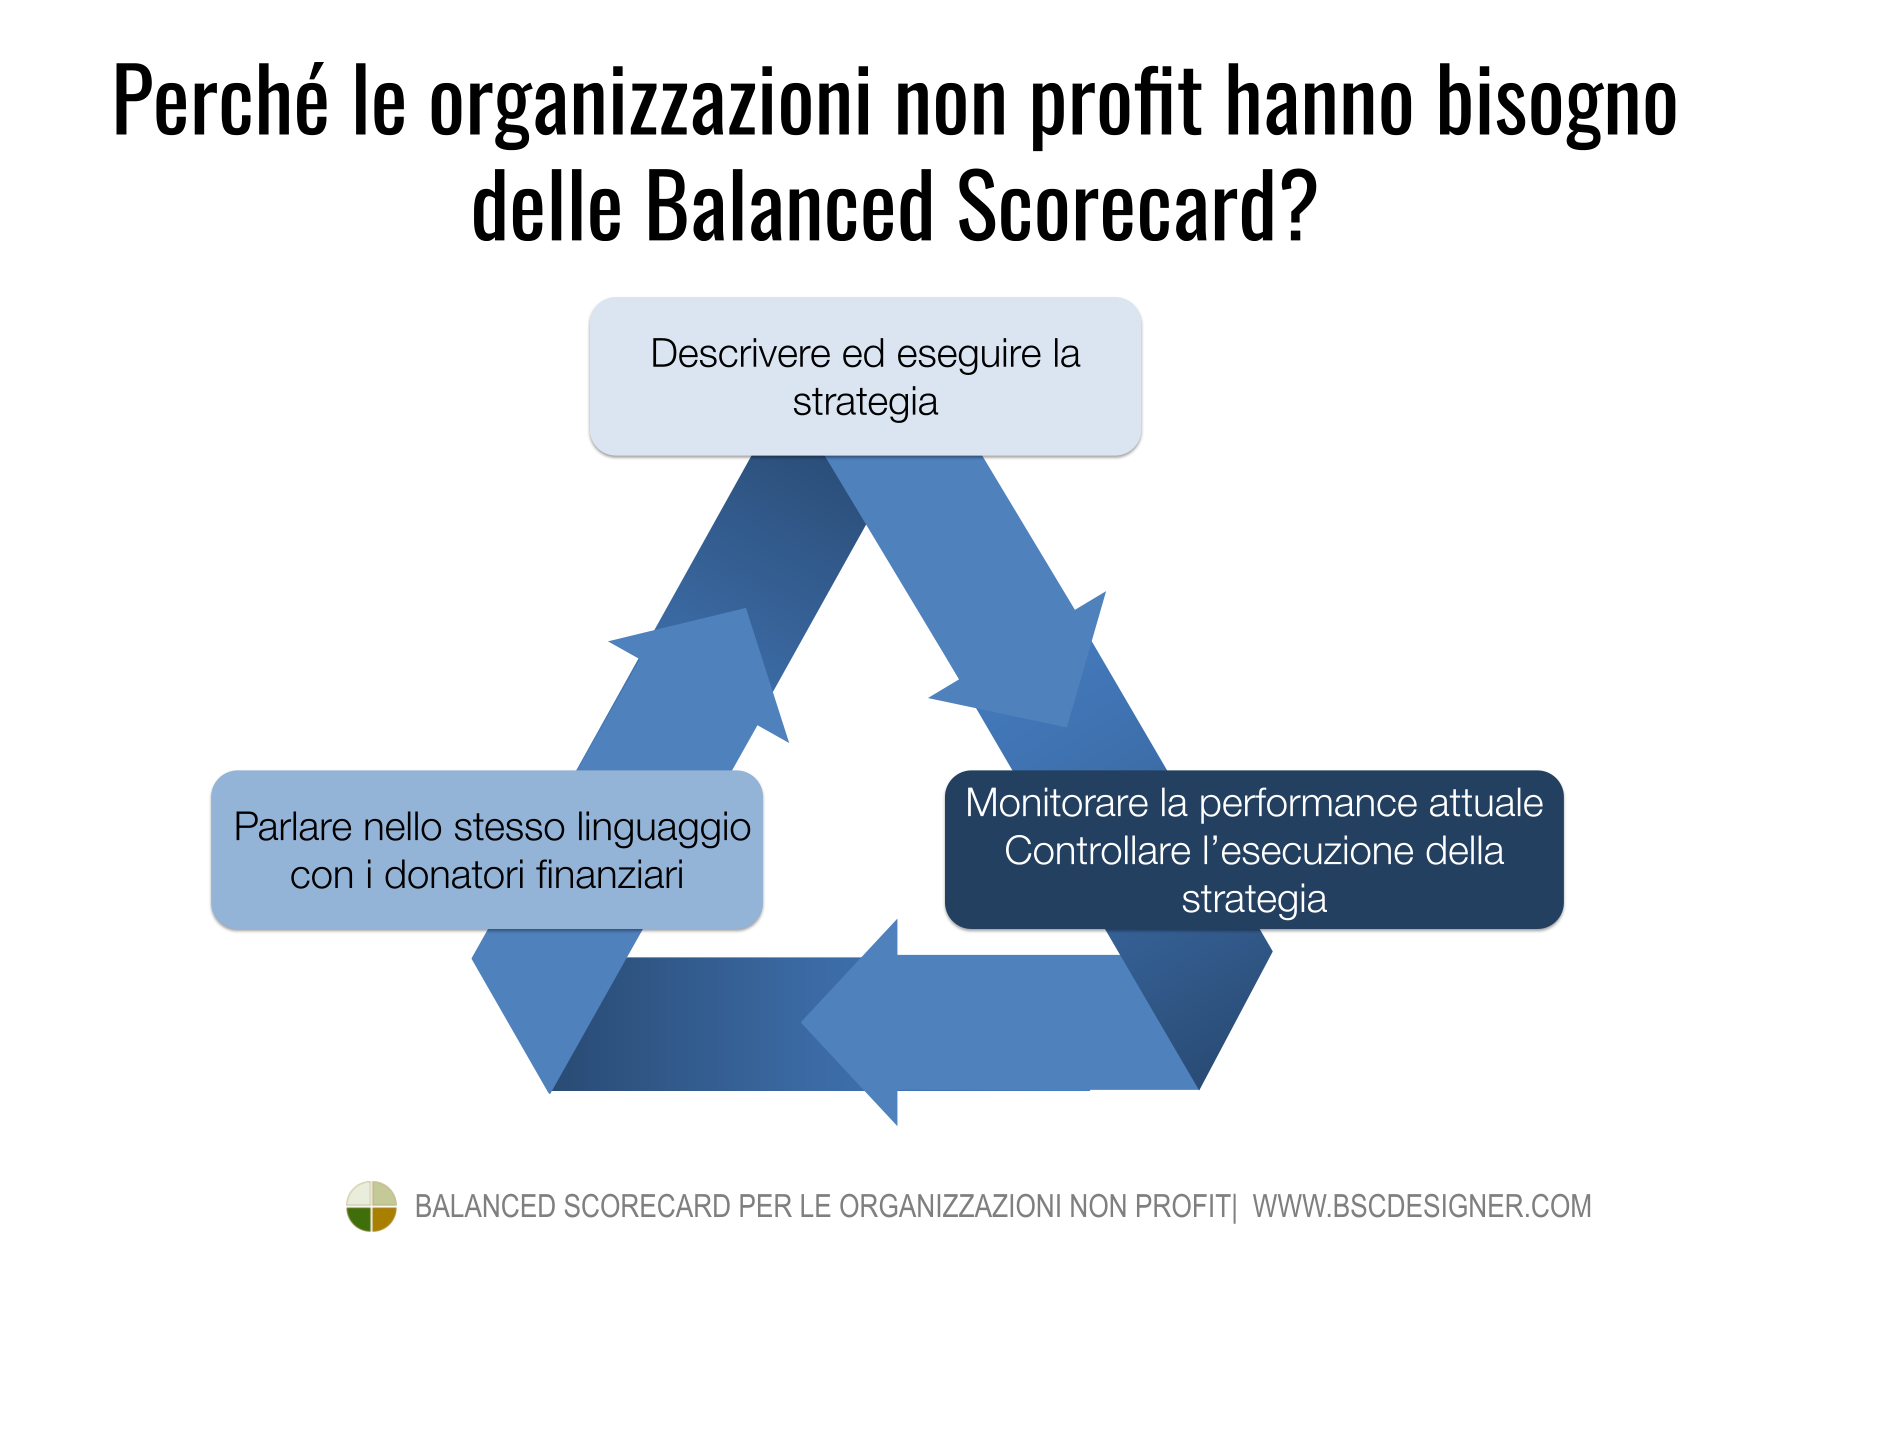 Perché le organizzazioni non profit hanno bisogno delle Balanced Scorecard